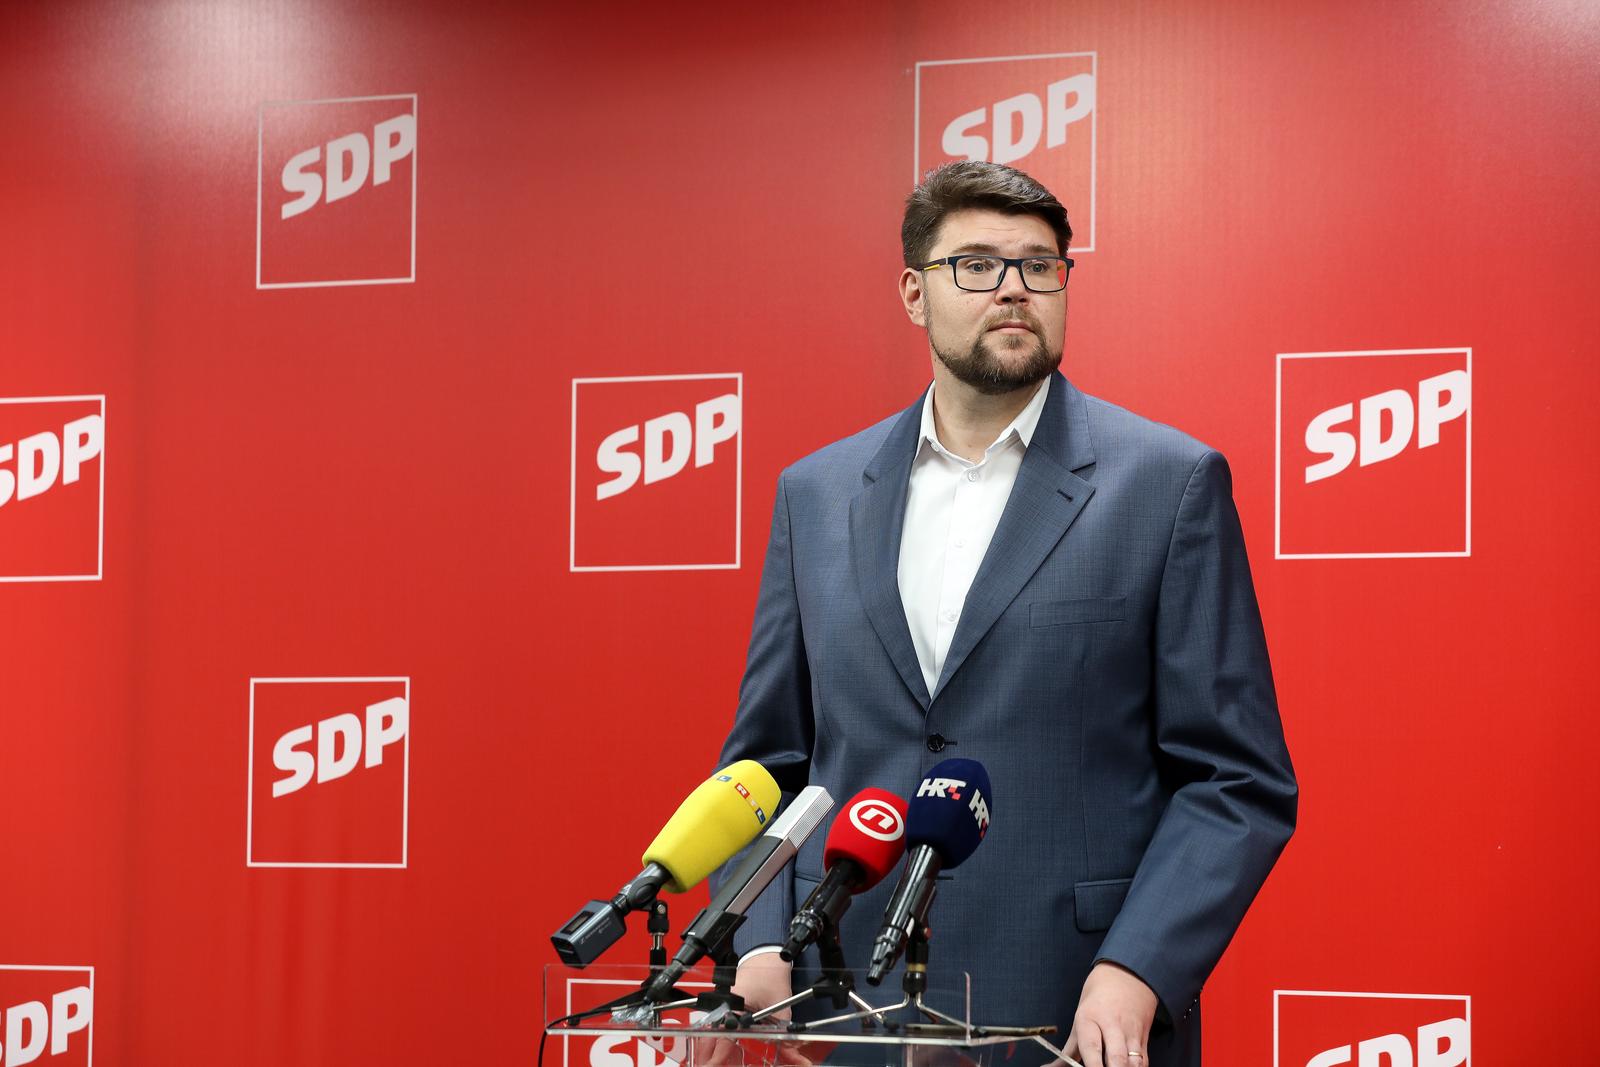 13.09.2022., Zagreb - Predsjednik SDP-a Pedja Grbin dao je izjavu nakon sjednice Predsjednistva stranke. Photo: Emica Elvedji/PIXSELL